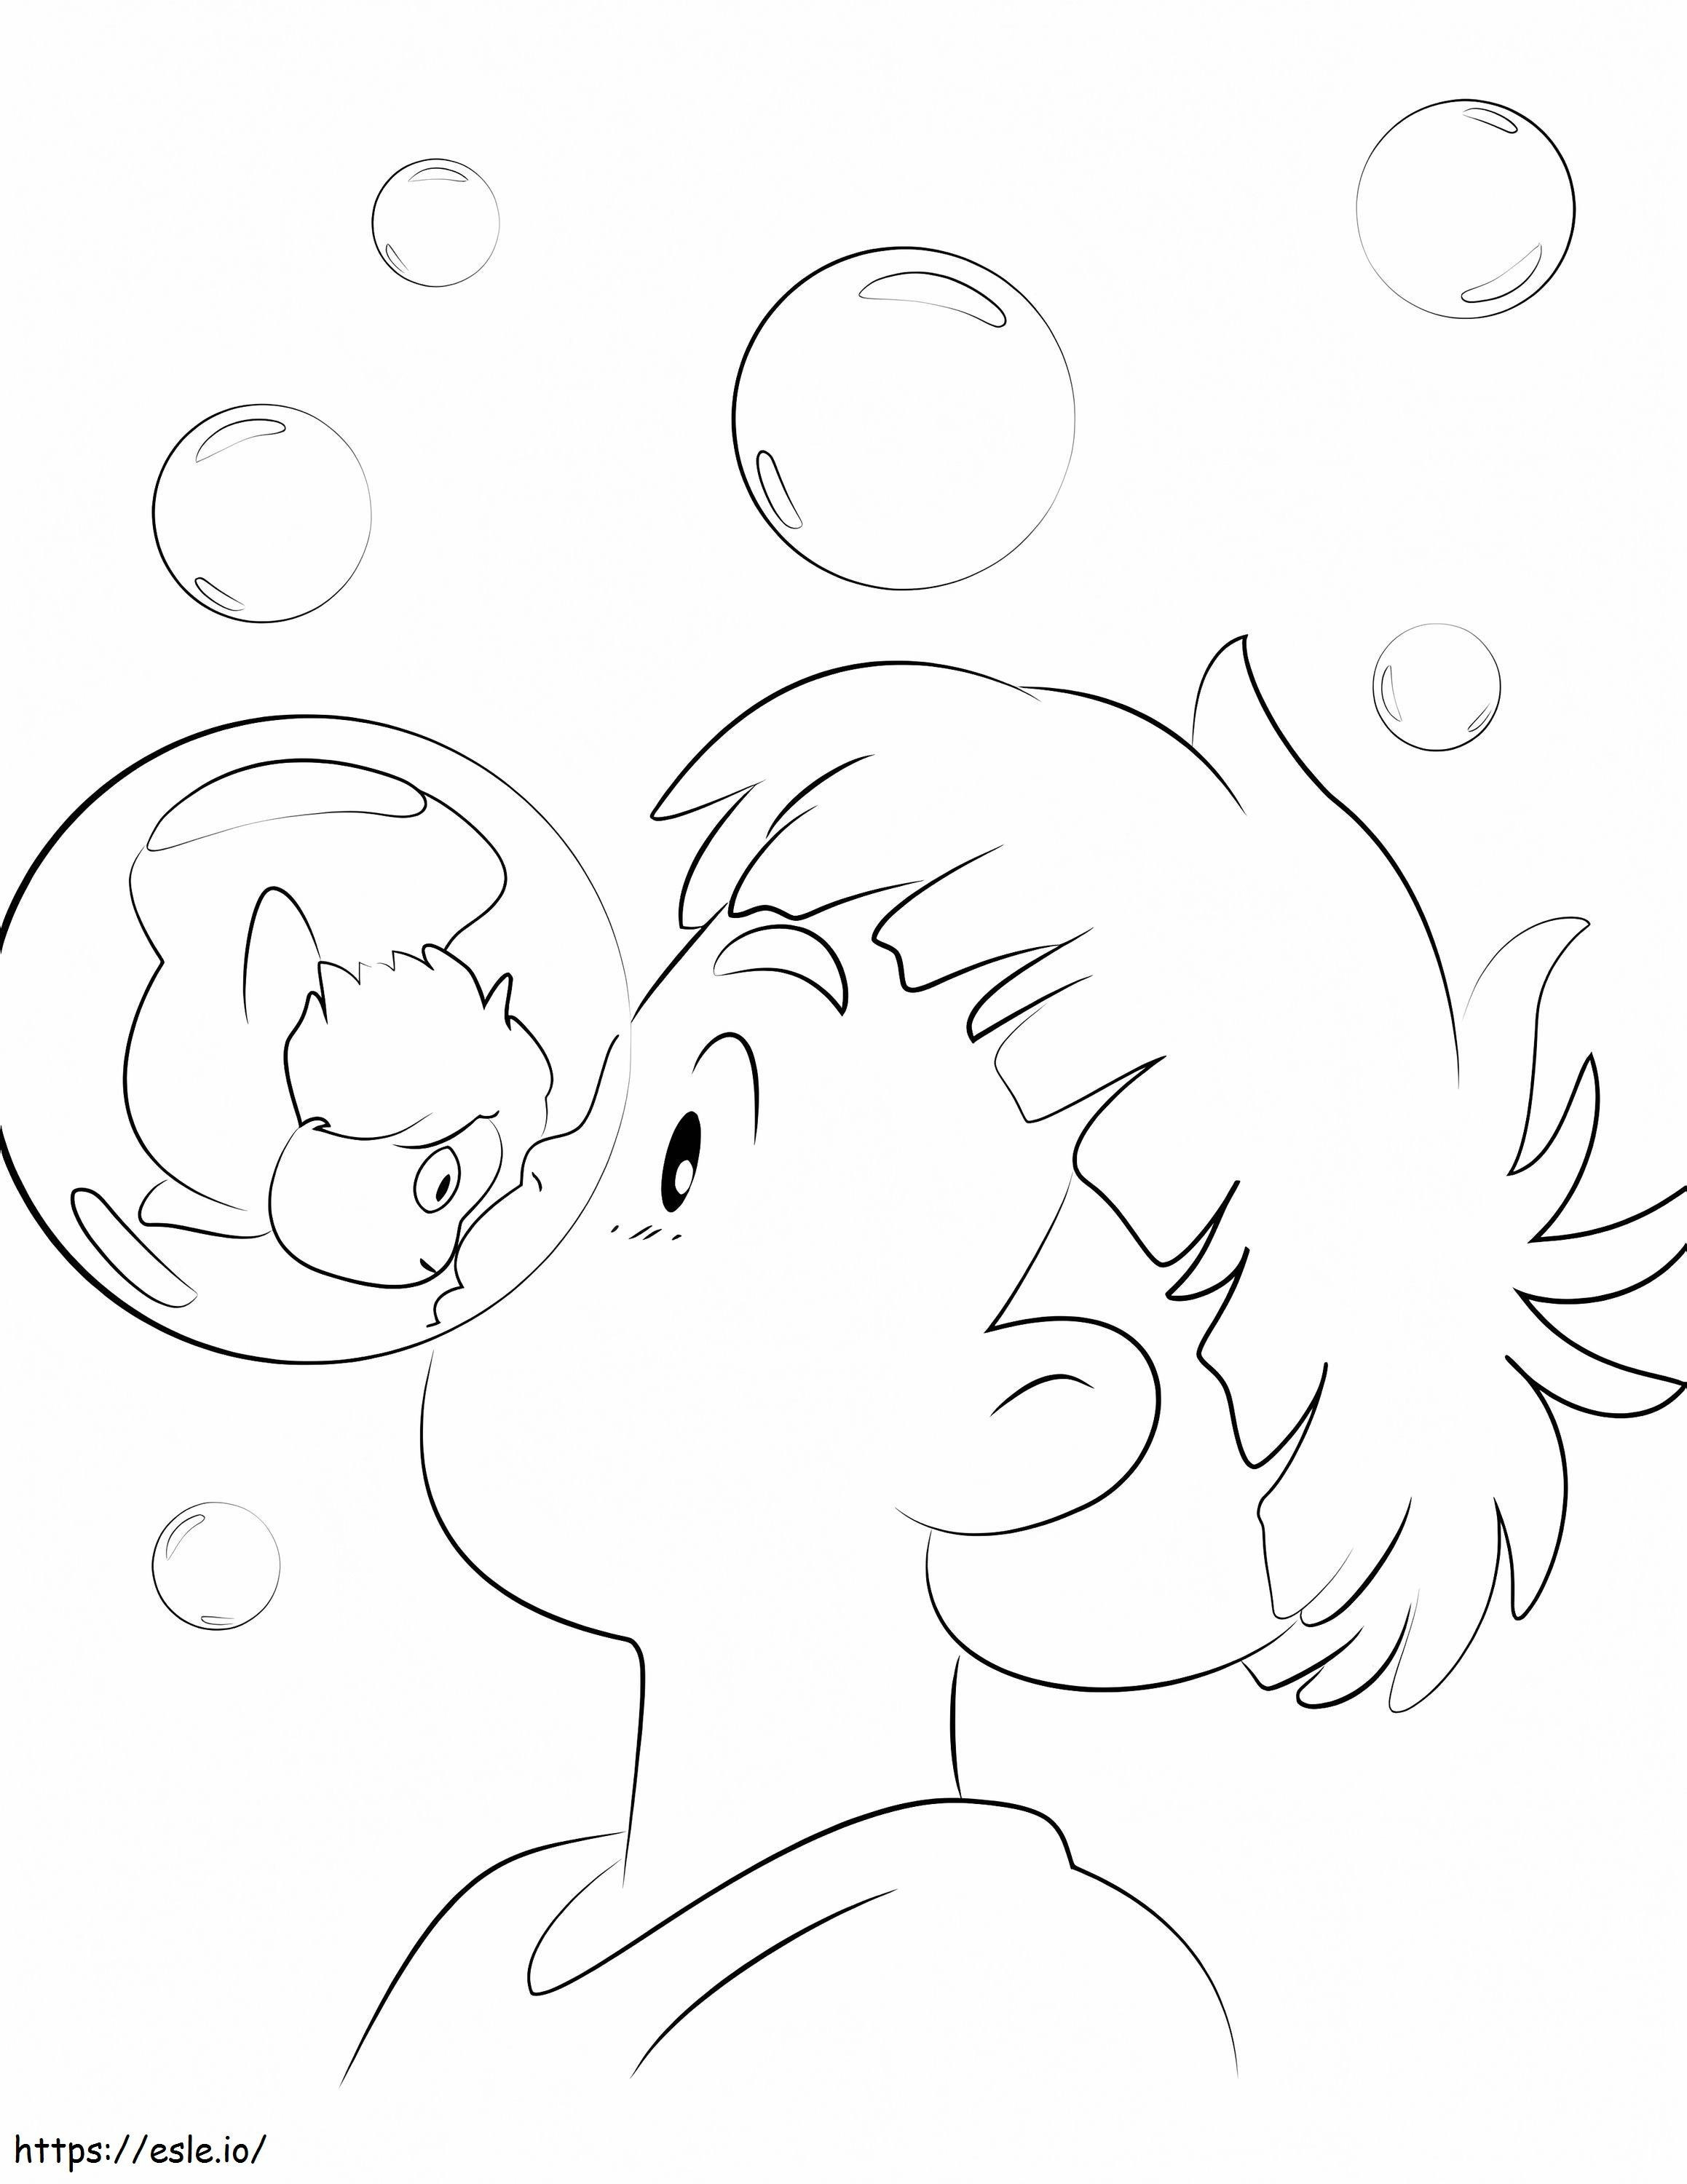 Sosuke ja Ponyo 1 värityskuva